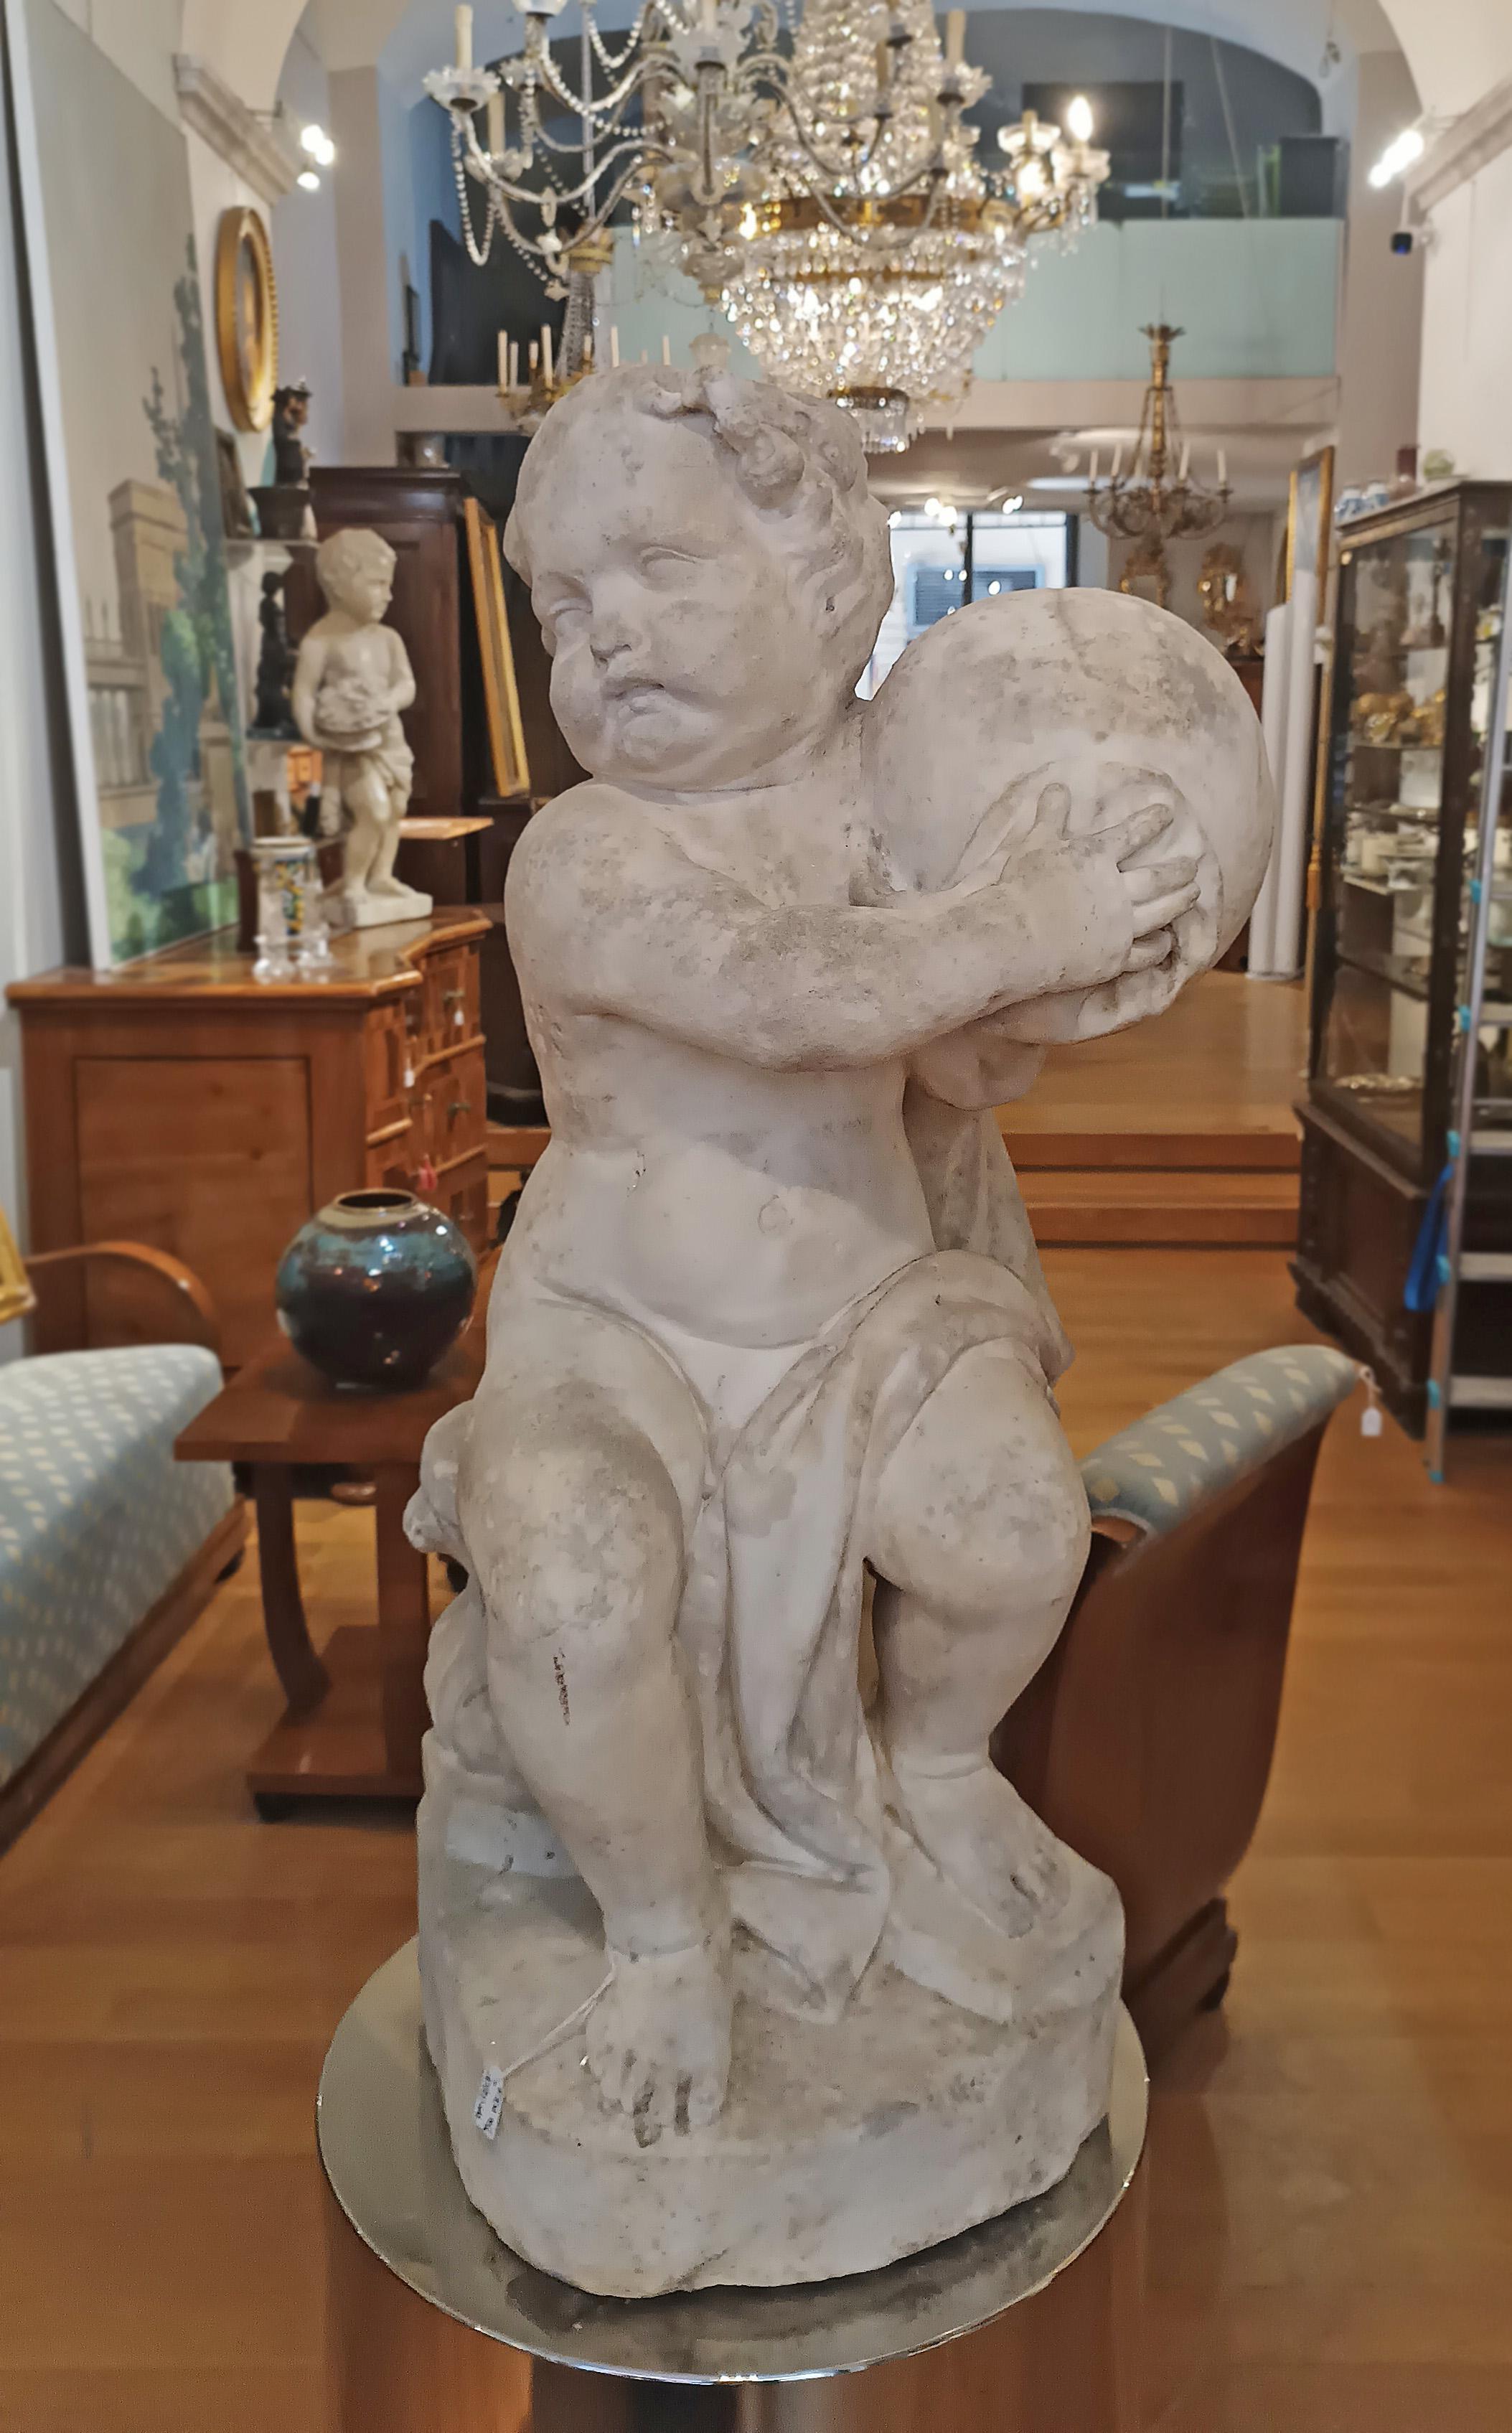 Magnifique sculpture en marbre blanc de Carrare représentant un jeune Hercule tenant le monde. À l'origine, l'œuvre a été conçue pour servir de cariatide au début d'un somptueux escalier de marbre dans un palais. Par la suite, l'œuvre a été vendue